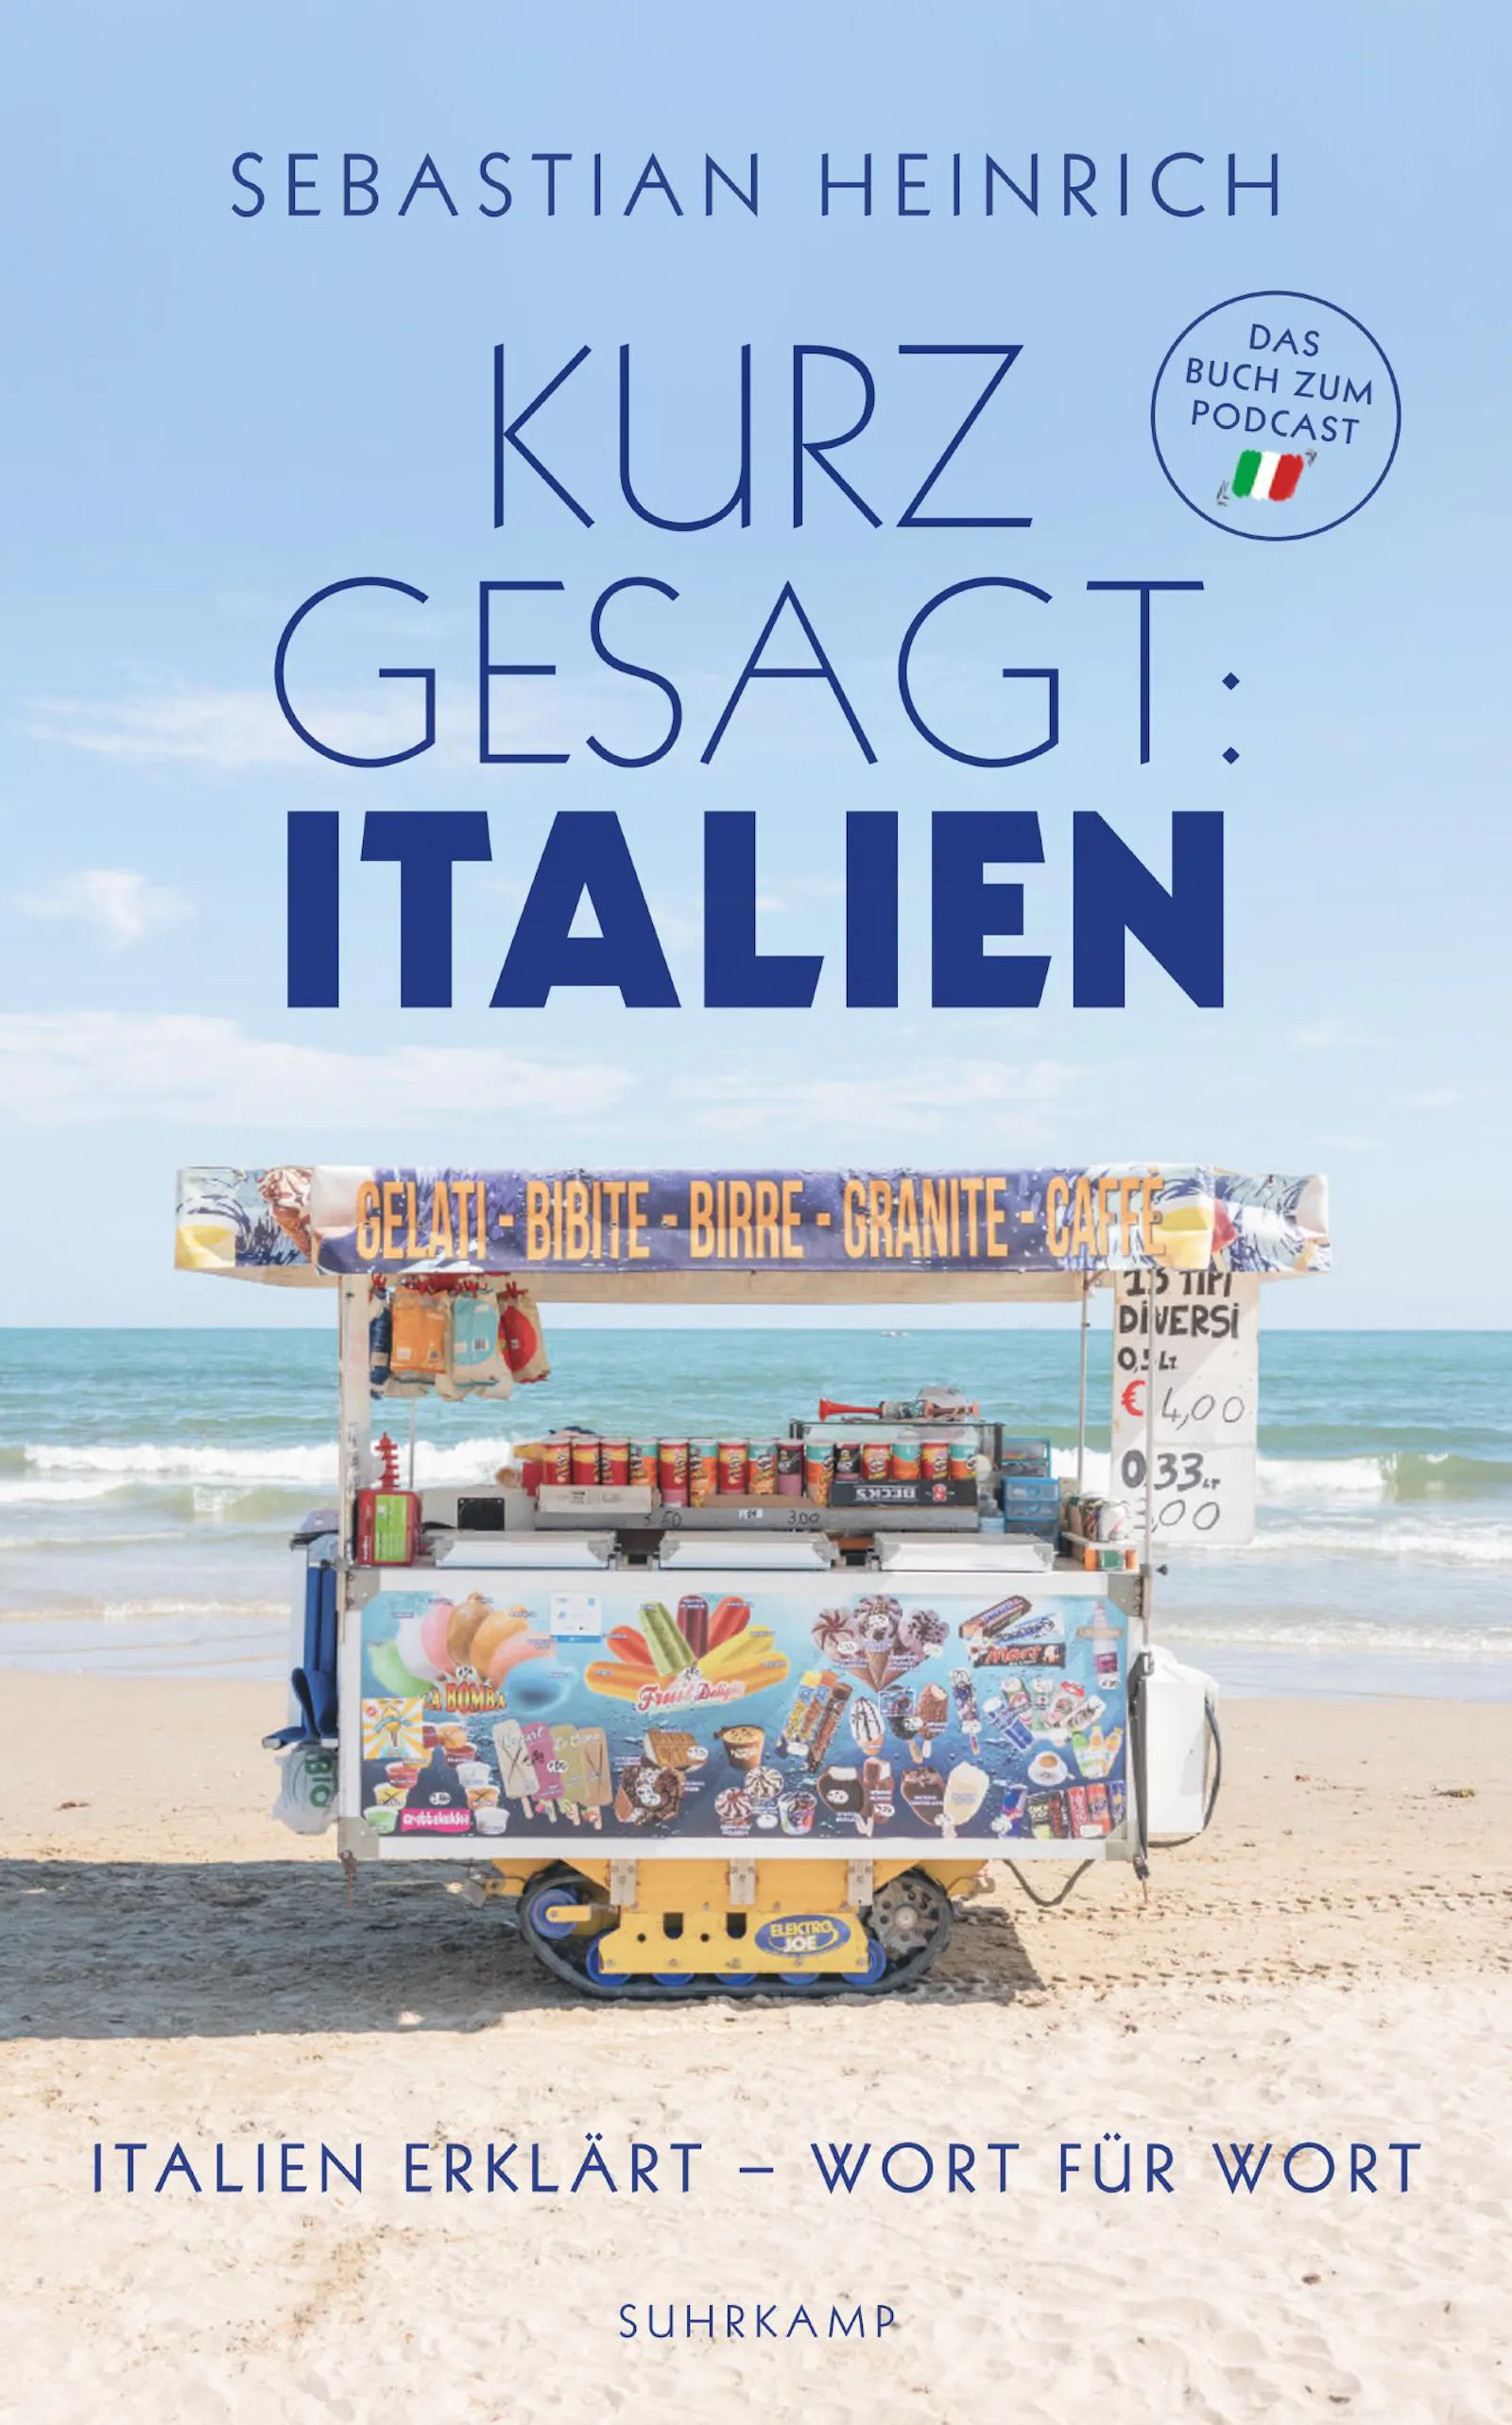 Das Cover von "Kurz gesagt: Italien": Ein Eiswagen auf einem italienischen Strand, dahinter die Meeresbrandung.